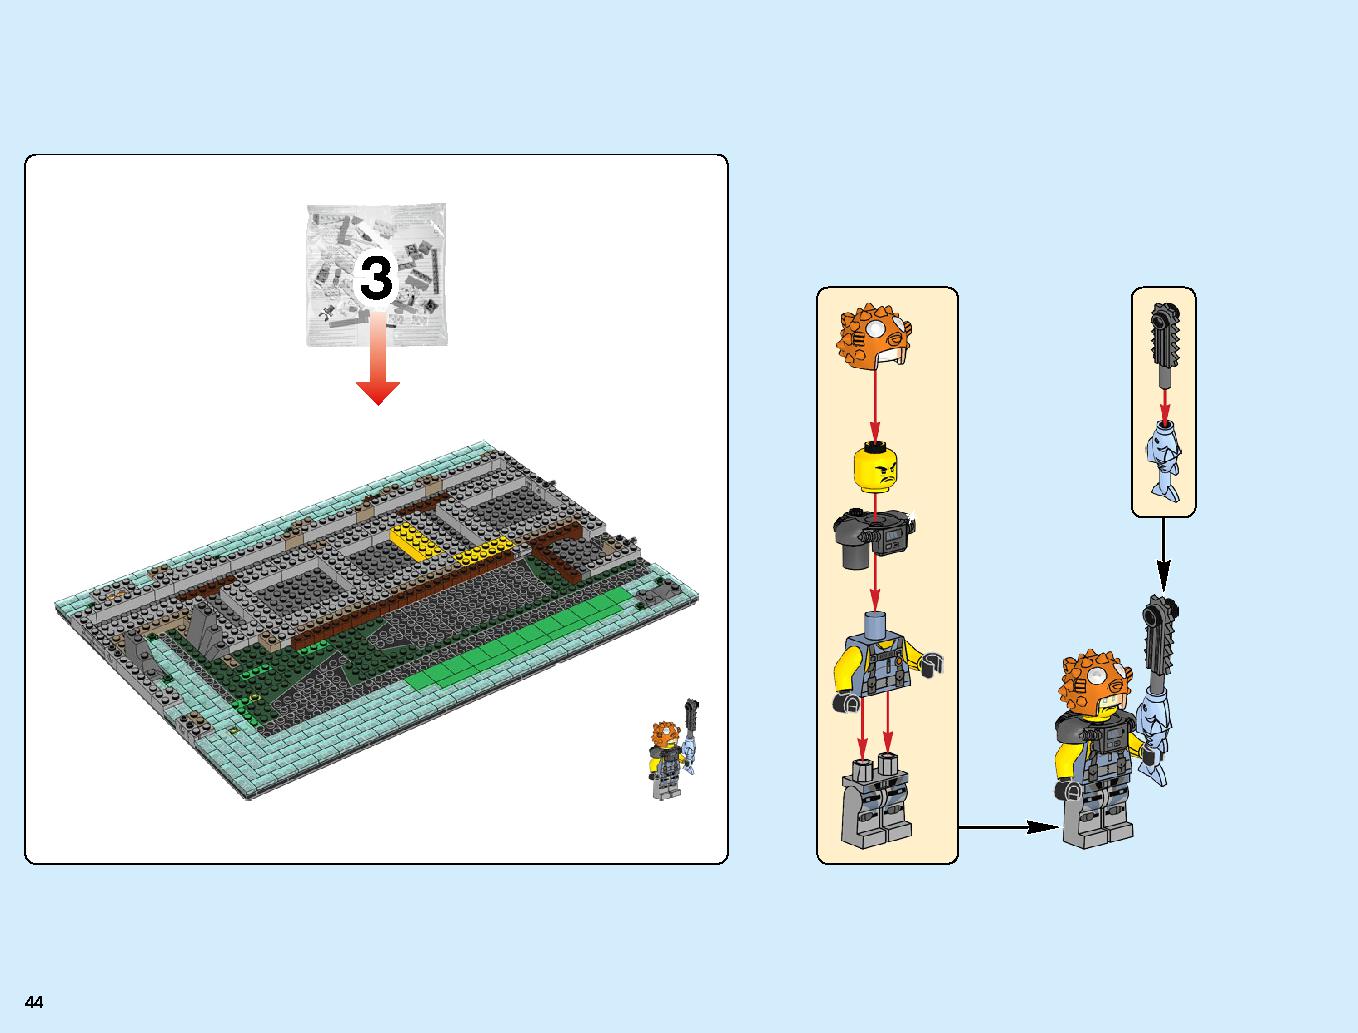 ニンジャゴーシティ・ポートパーク 70657 レゴの商品情報 レゴの説明書・組立方法 44 page